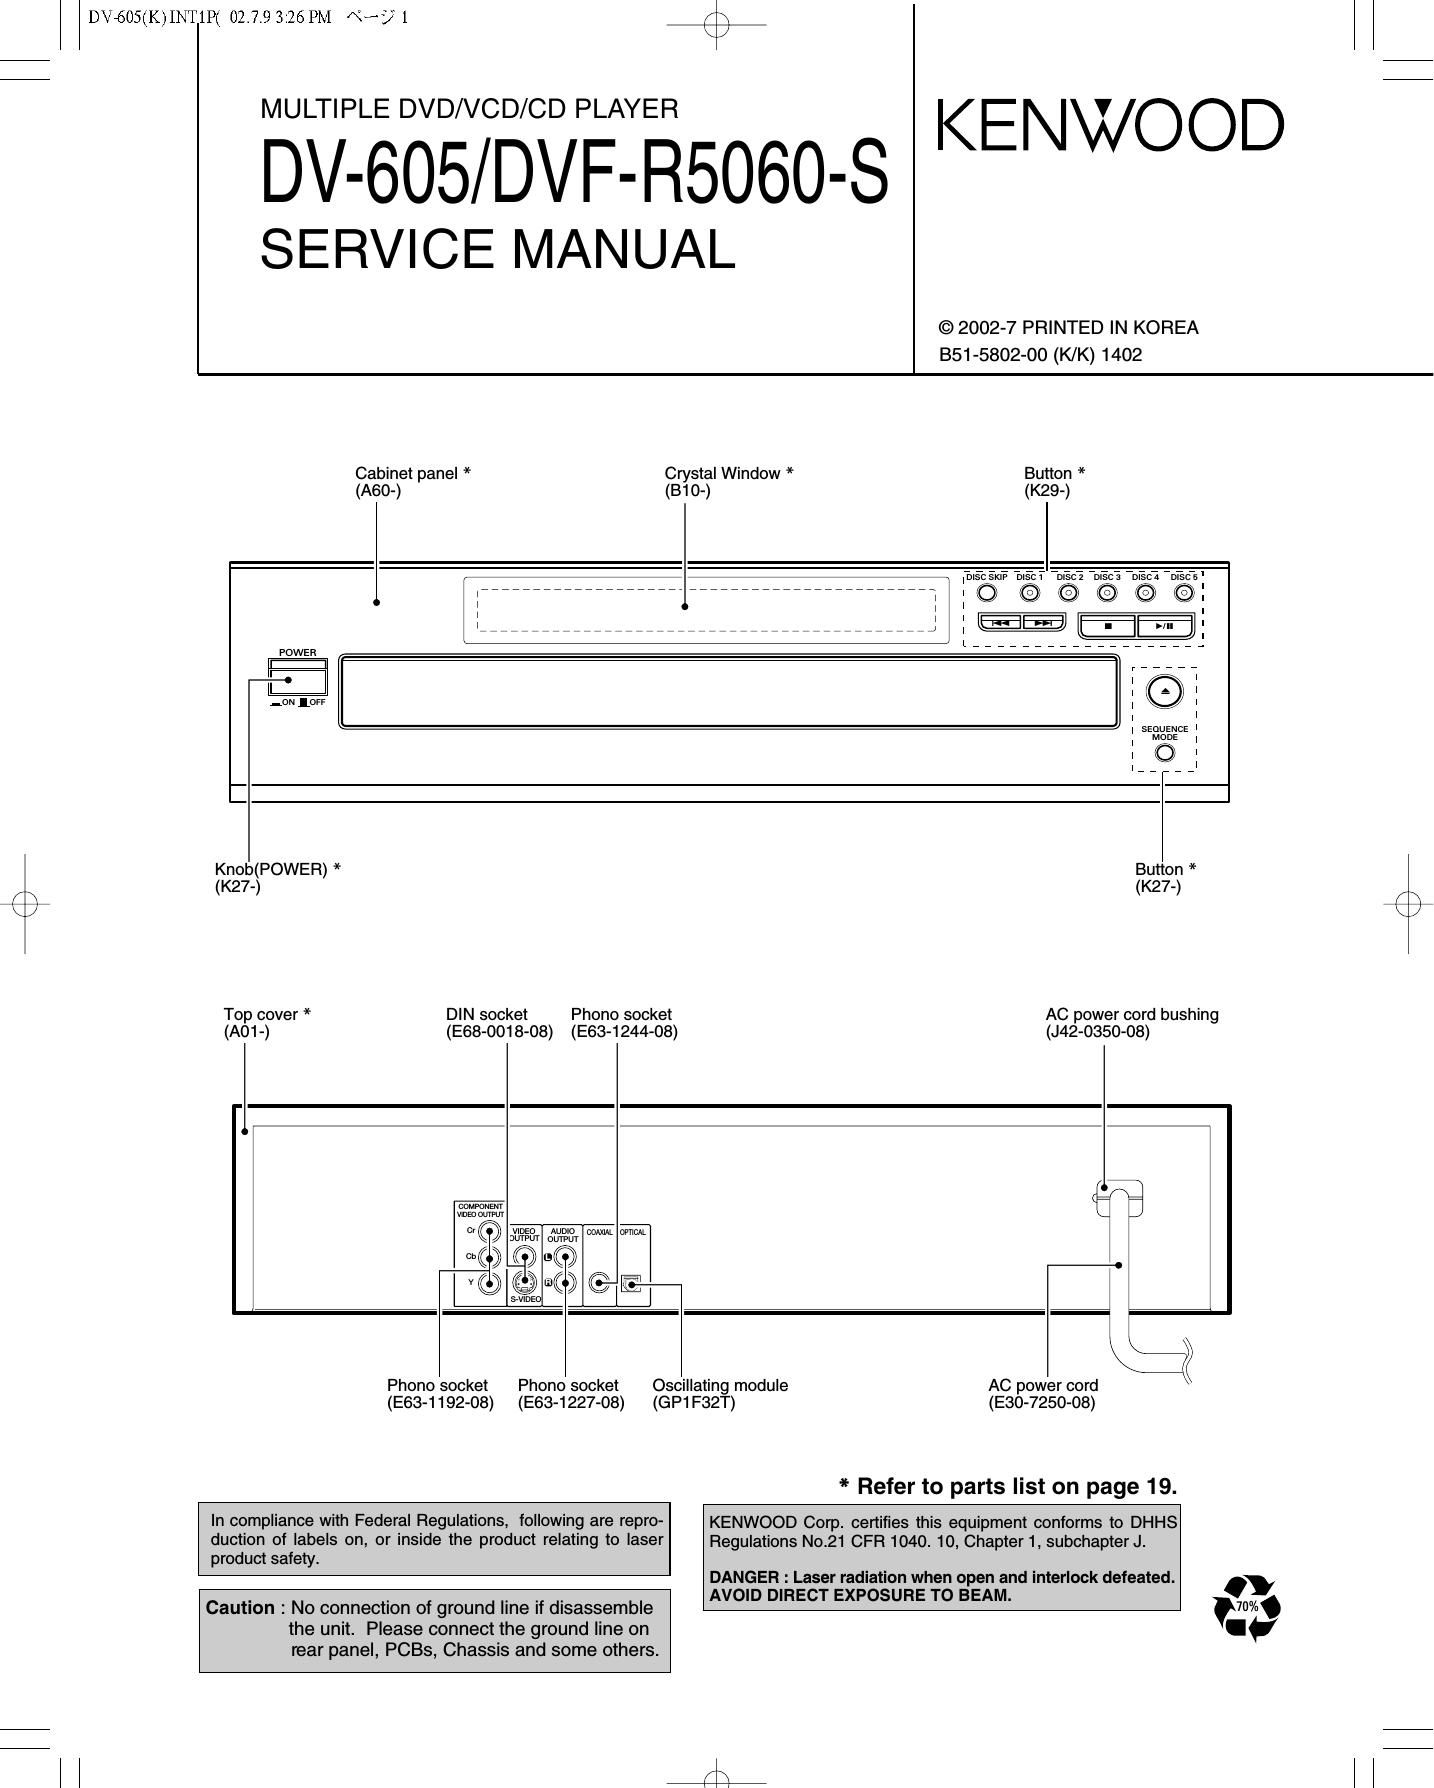 Kenwood DV 605 Service Manual